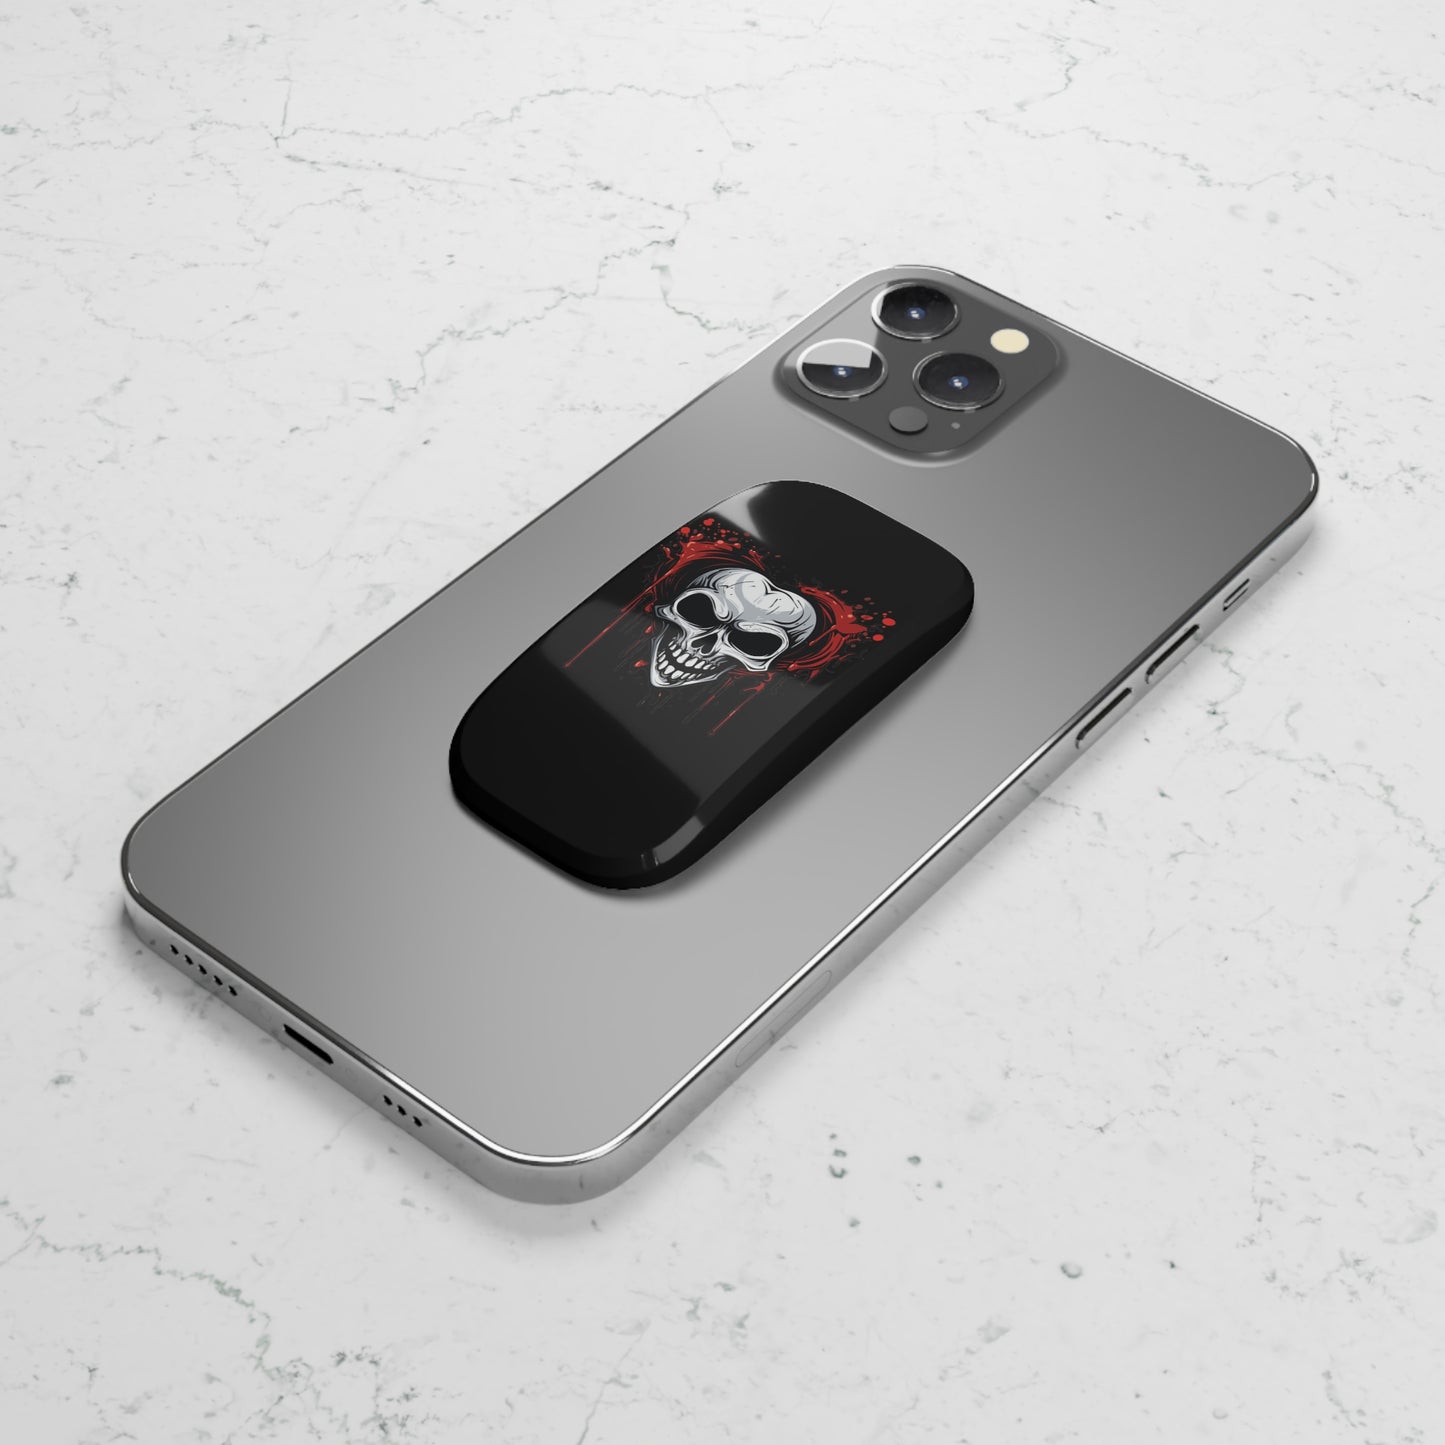 Neduz Dark Valentine Phone Click-On Grip